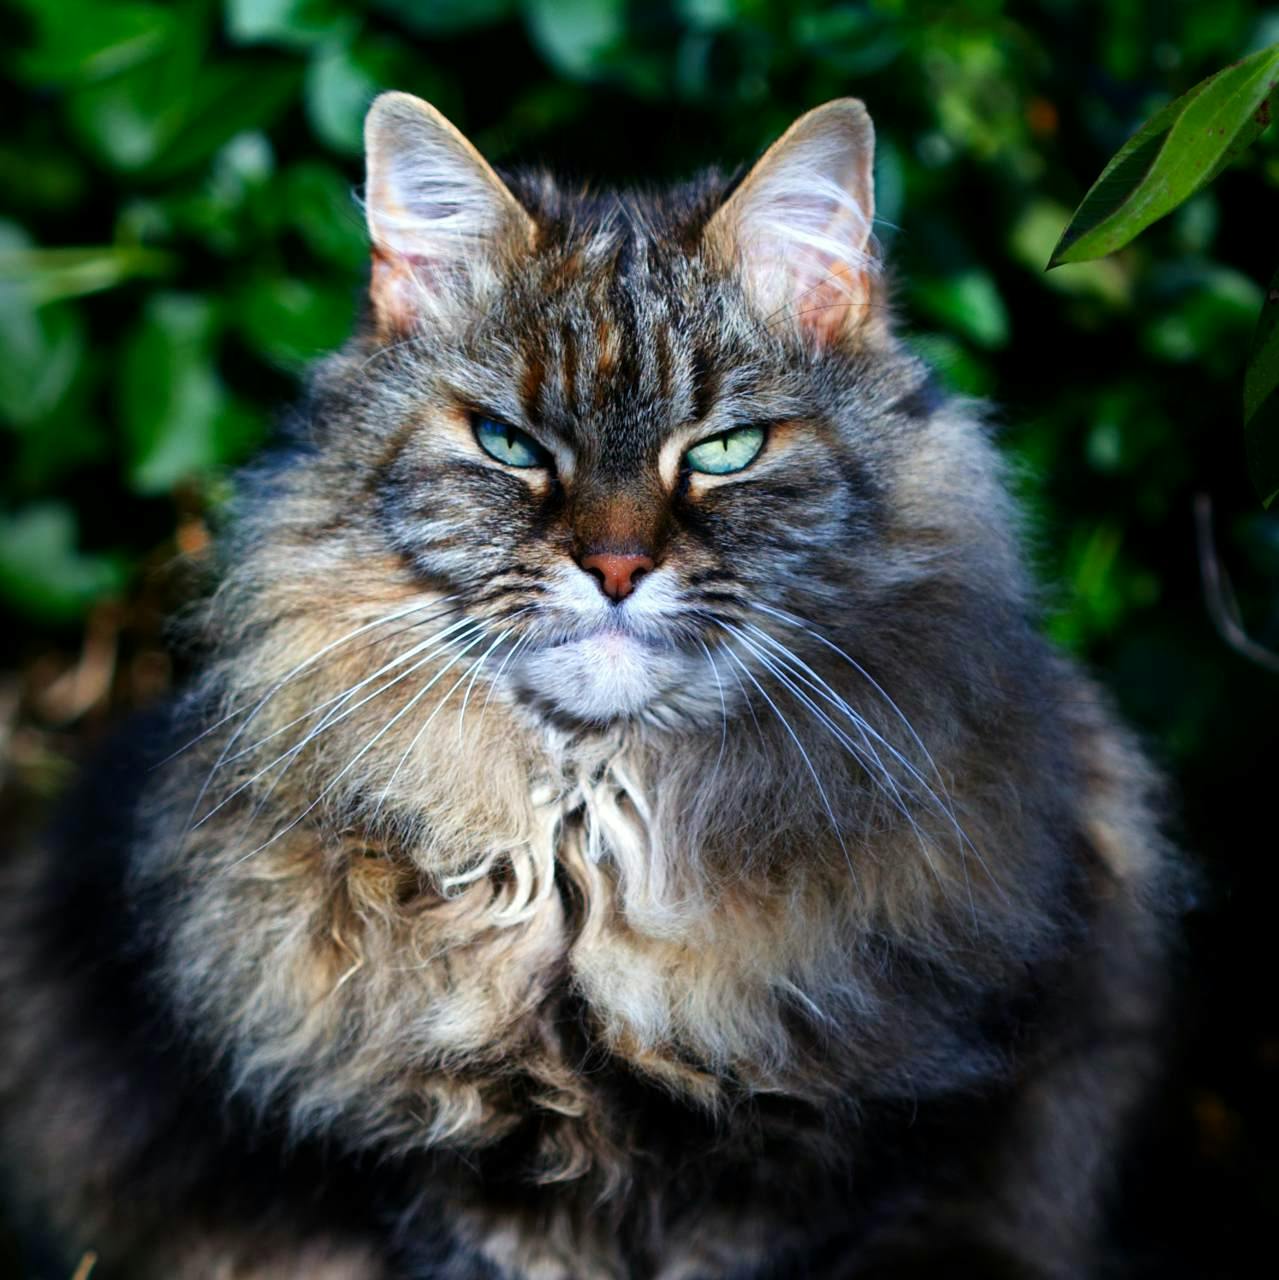 Siberian cat looking grumpy but cute